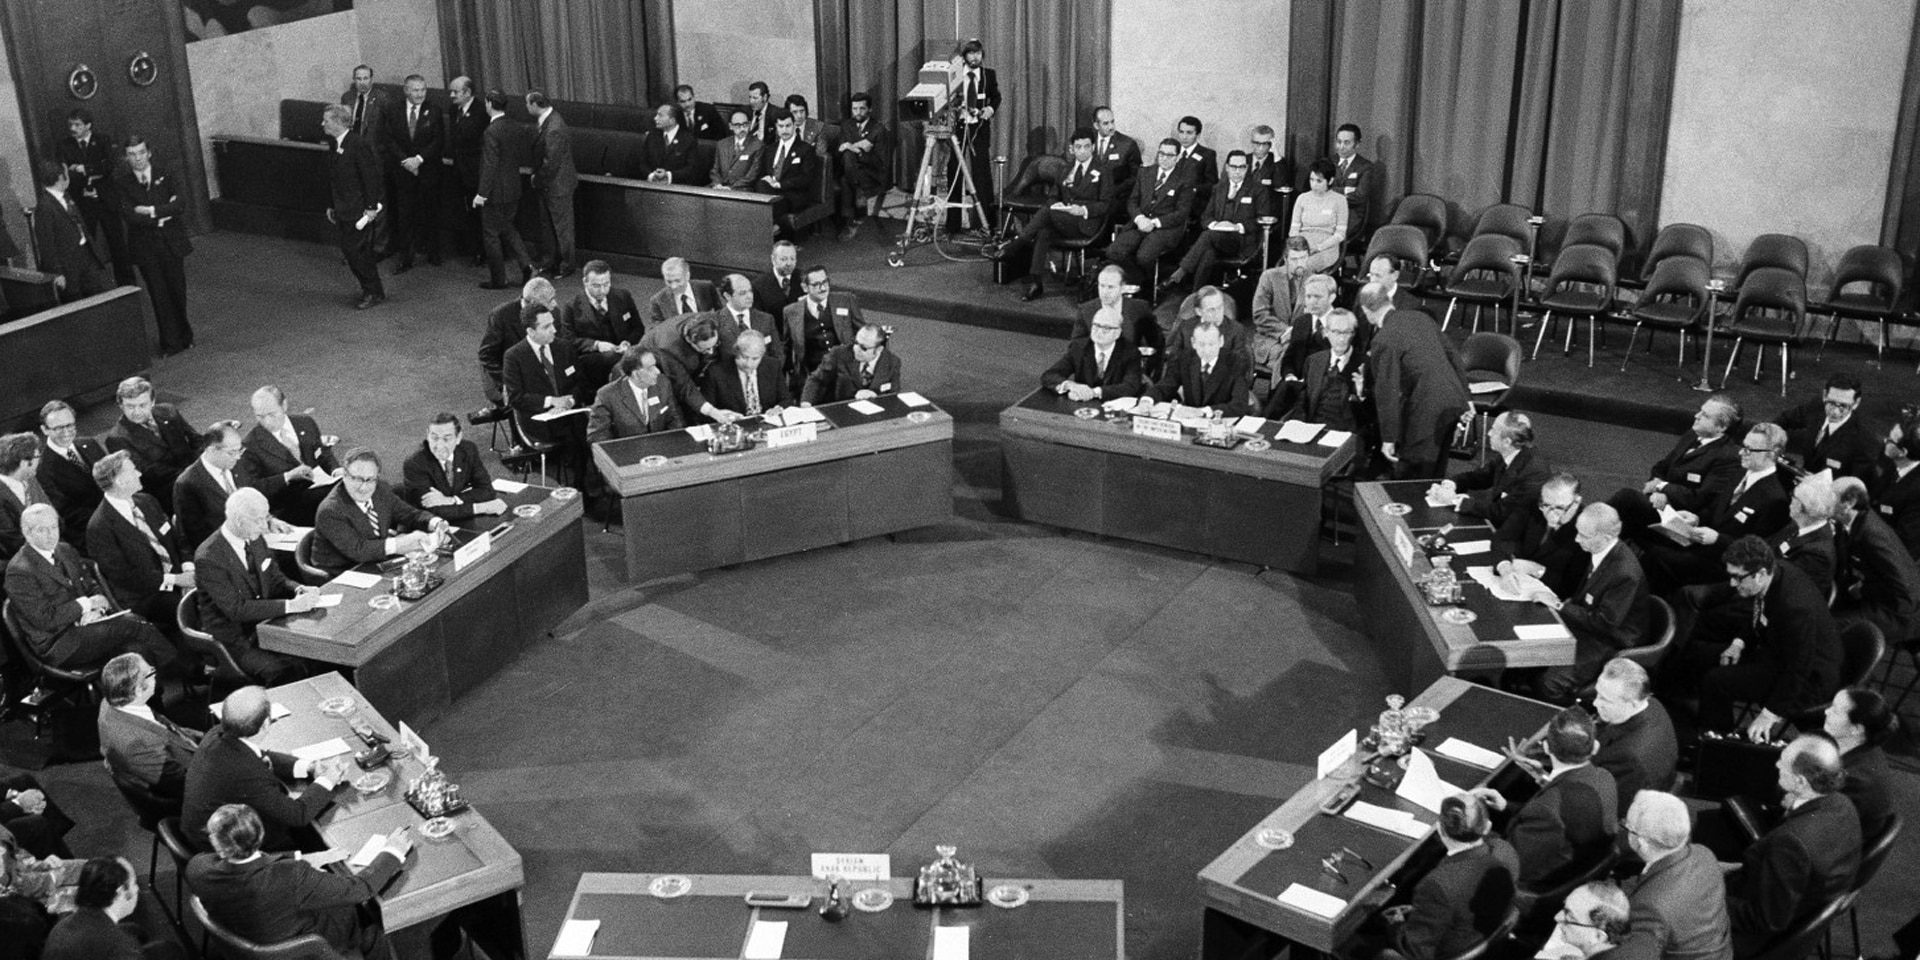 Photographie en noir et blanc: sept tables sont disposées en cercle dans une salle de conférence, avec des hommes assis à ces tables.